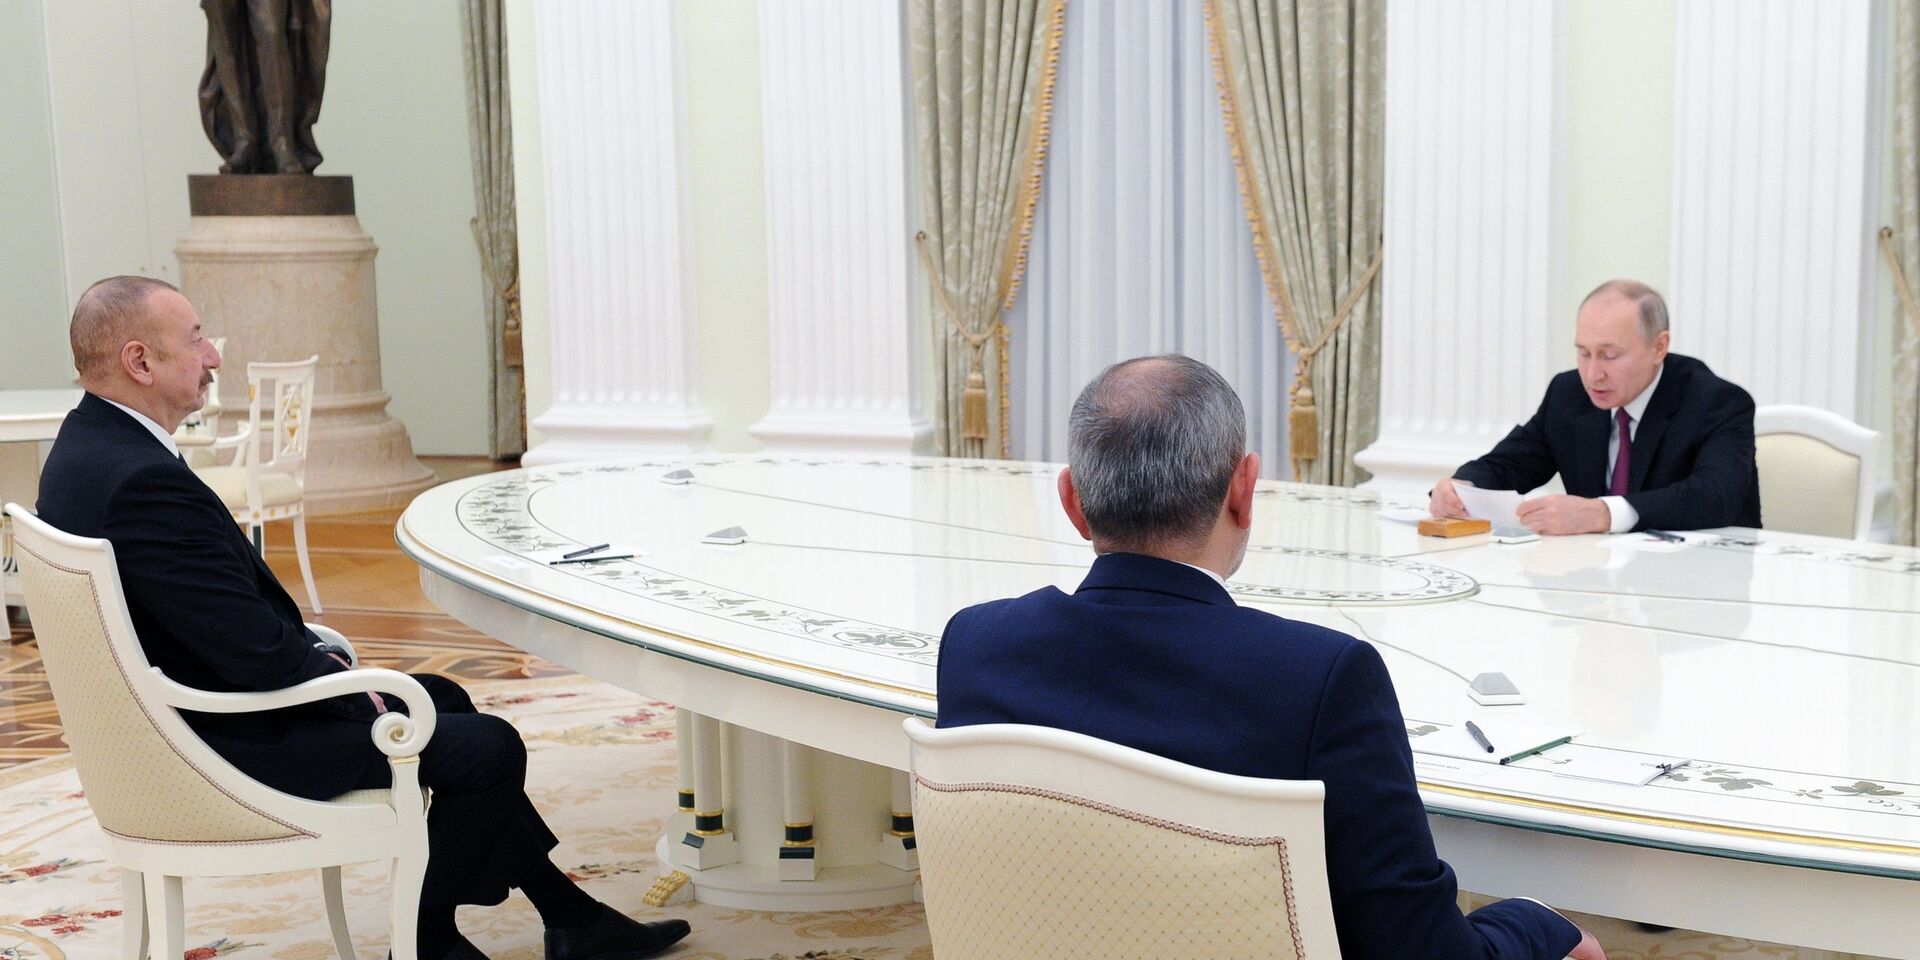 Трехсторонней встречи Путина с Алиевым и Пашиняном на саммите СНГ не будет - Песков 